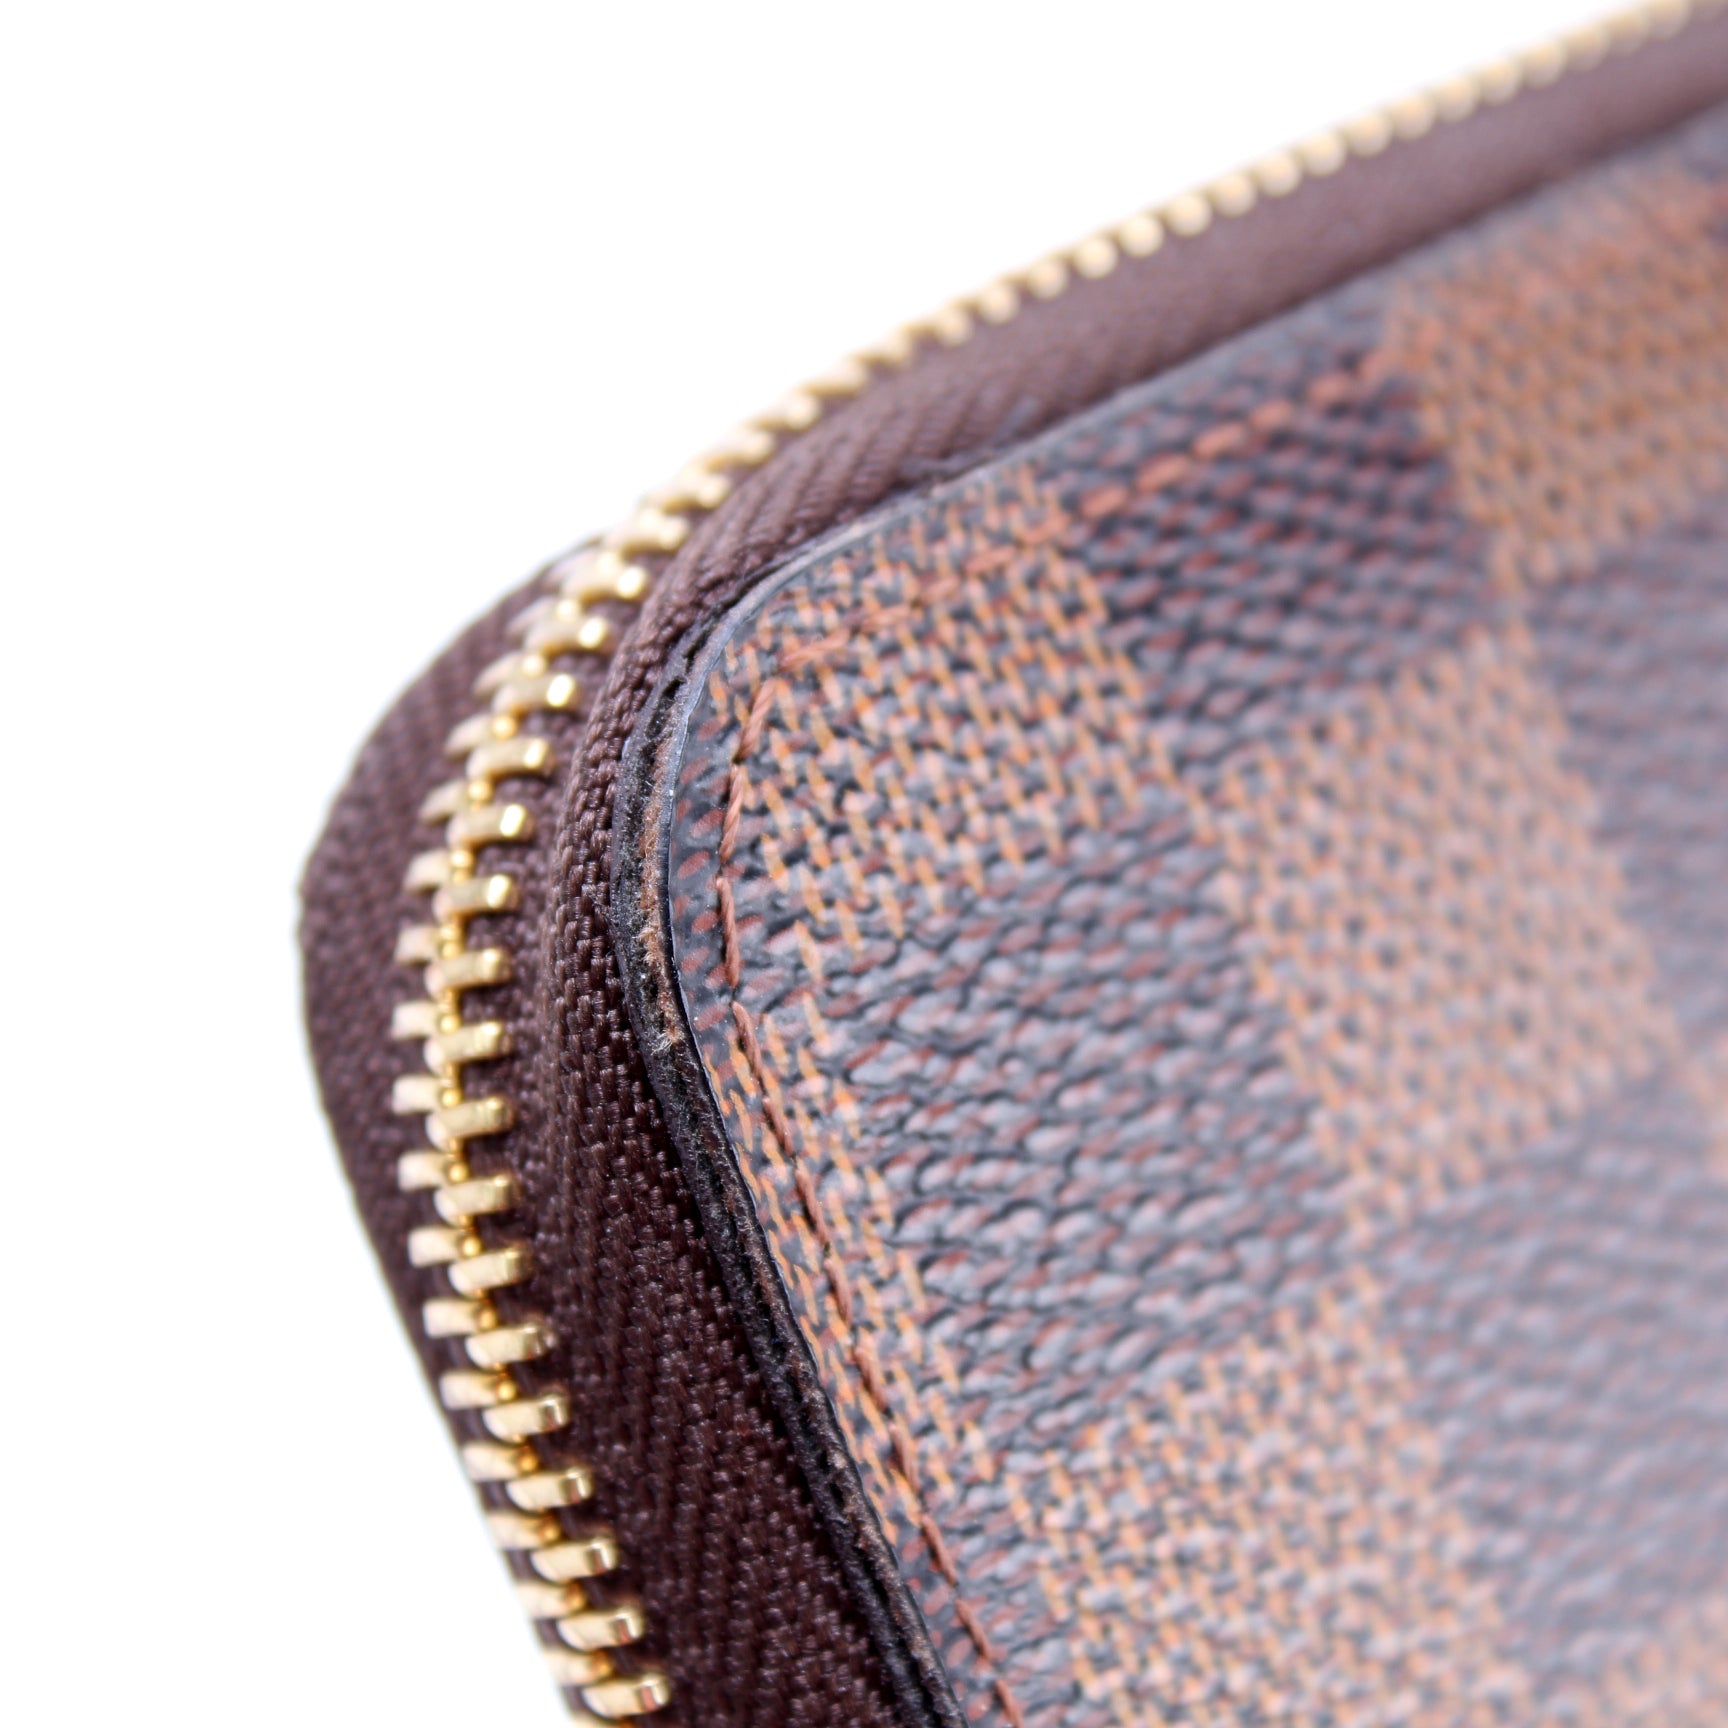 Louis Vuitton Damier Graphite Zippy Compact Wallet